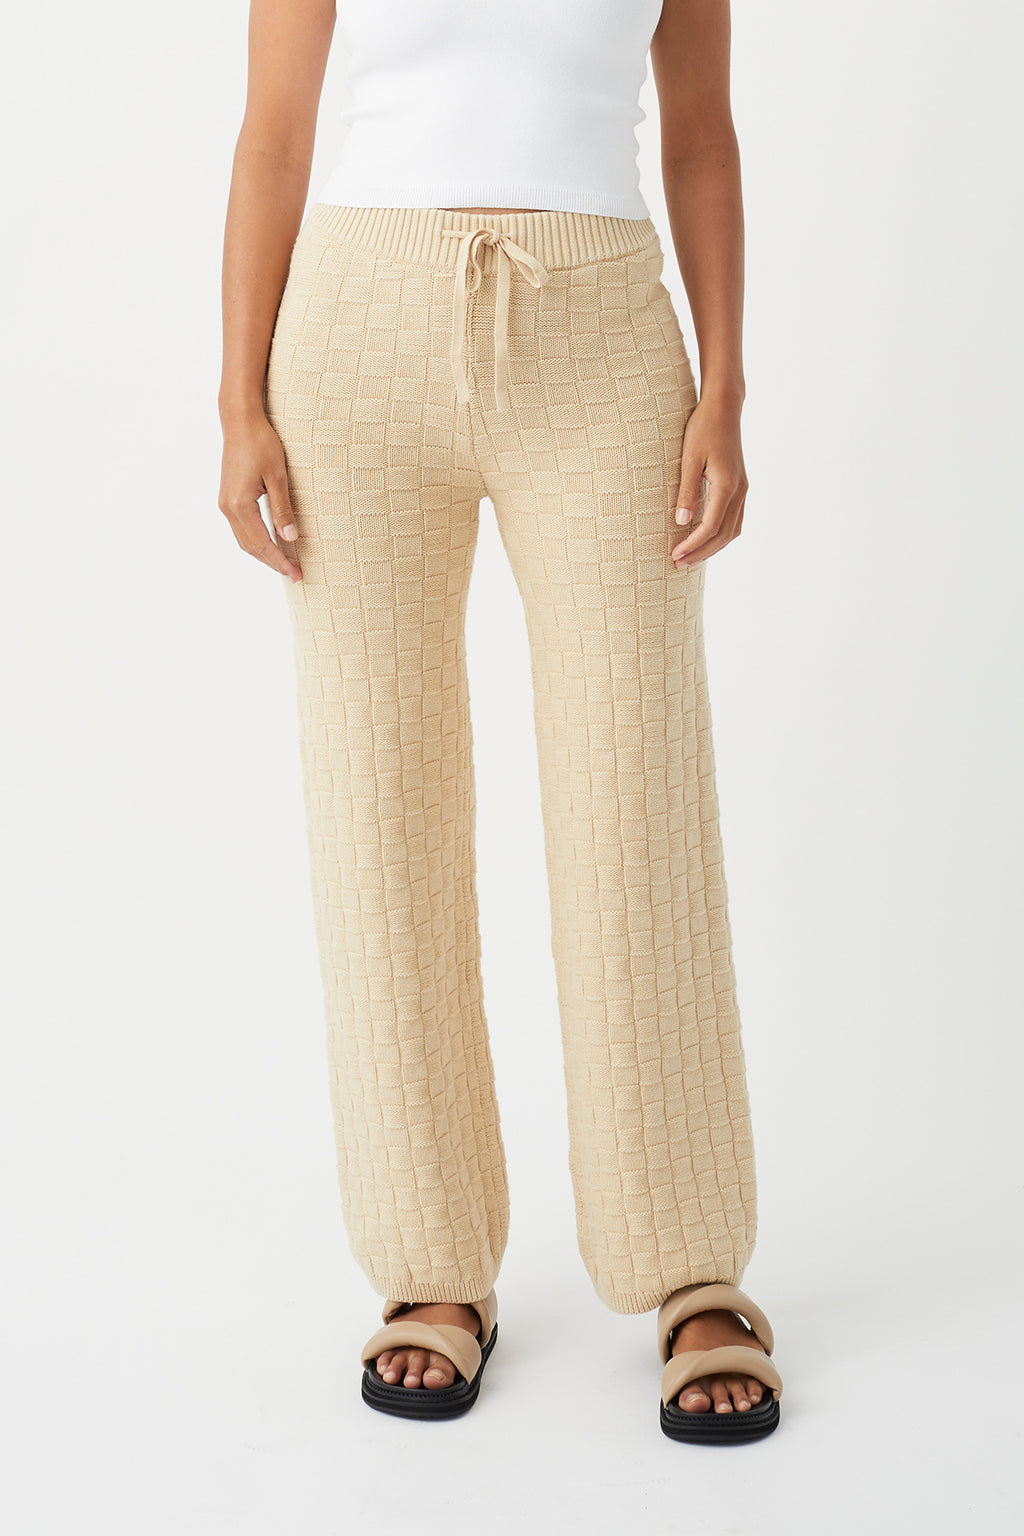 Sierra Organic Knit Pant - Oat